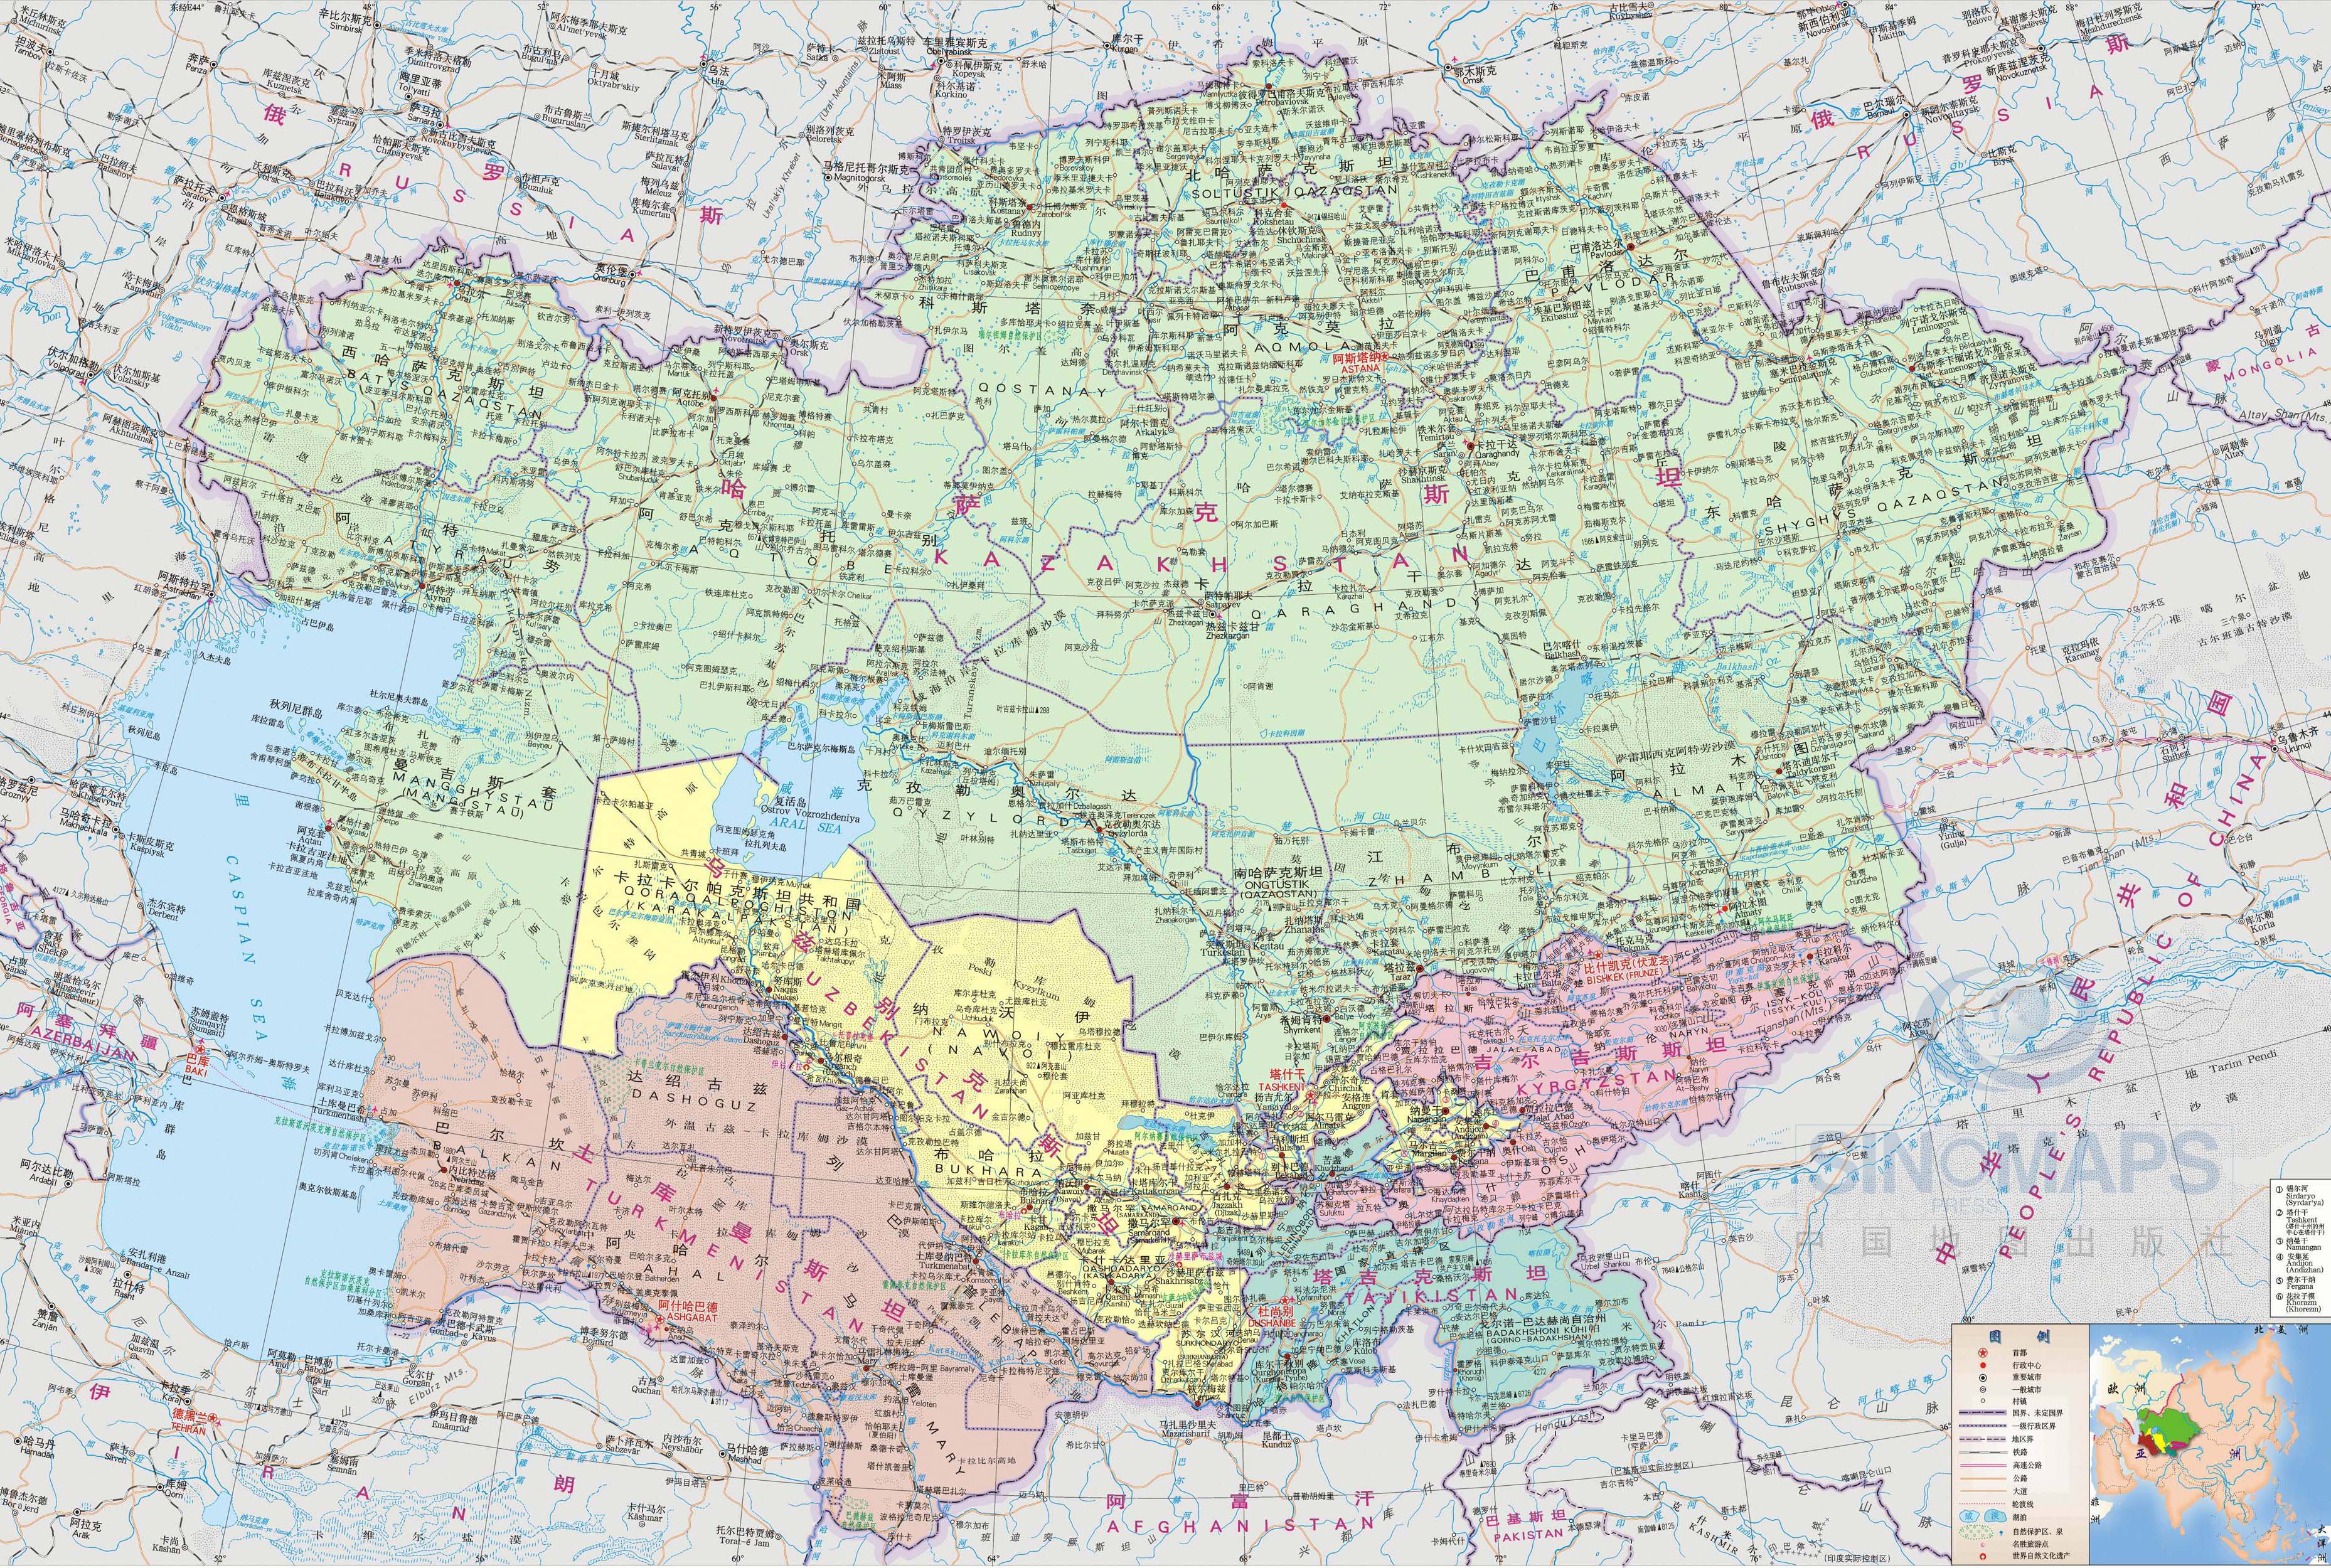 吉尔吉斯斯坦地图